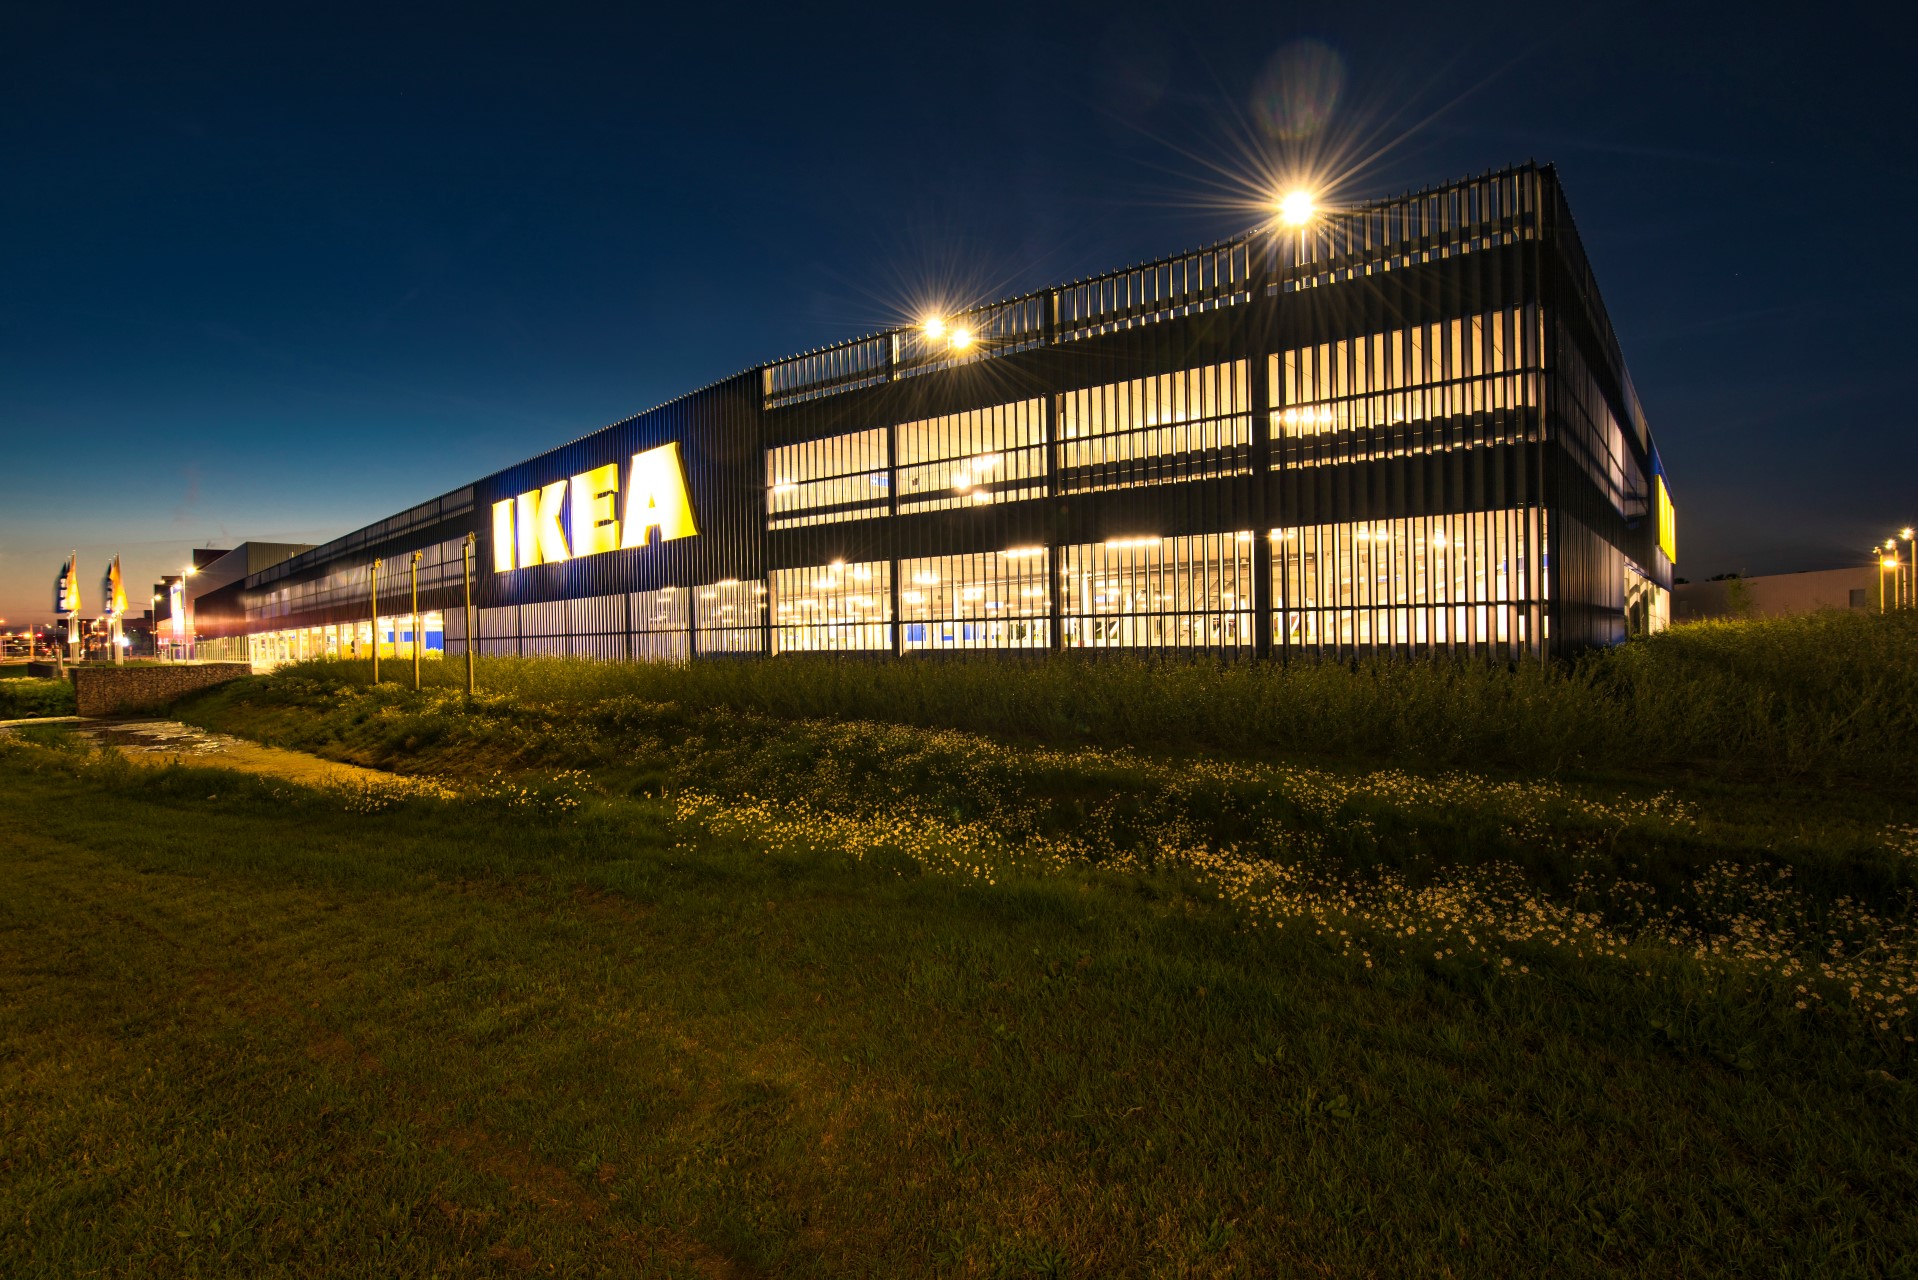 MD Lamel gevelbekleding in het donker genomen bij Ikea Zwolle